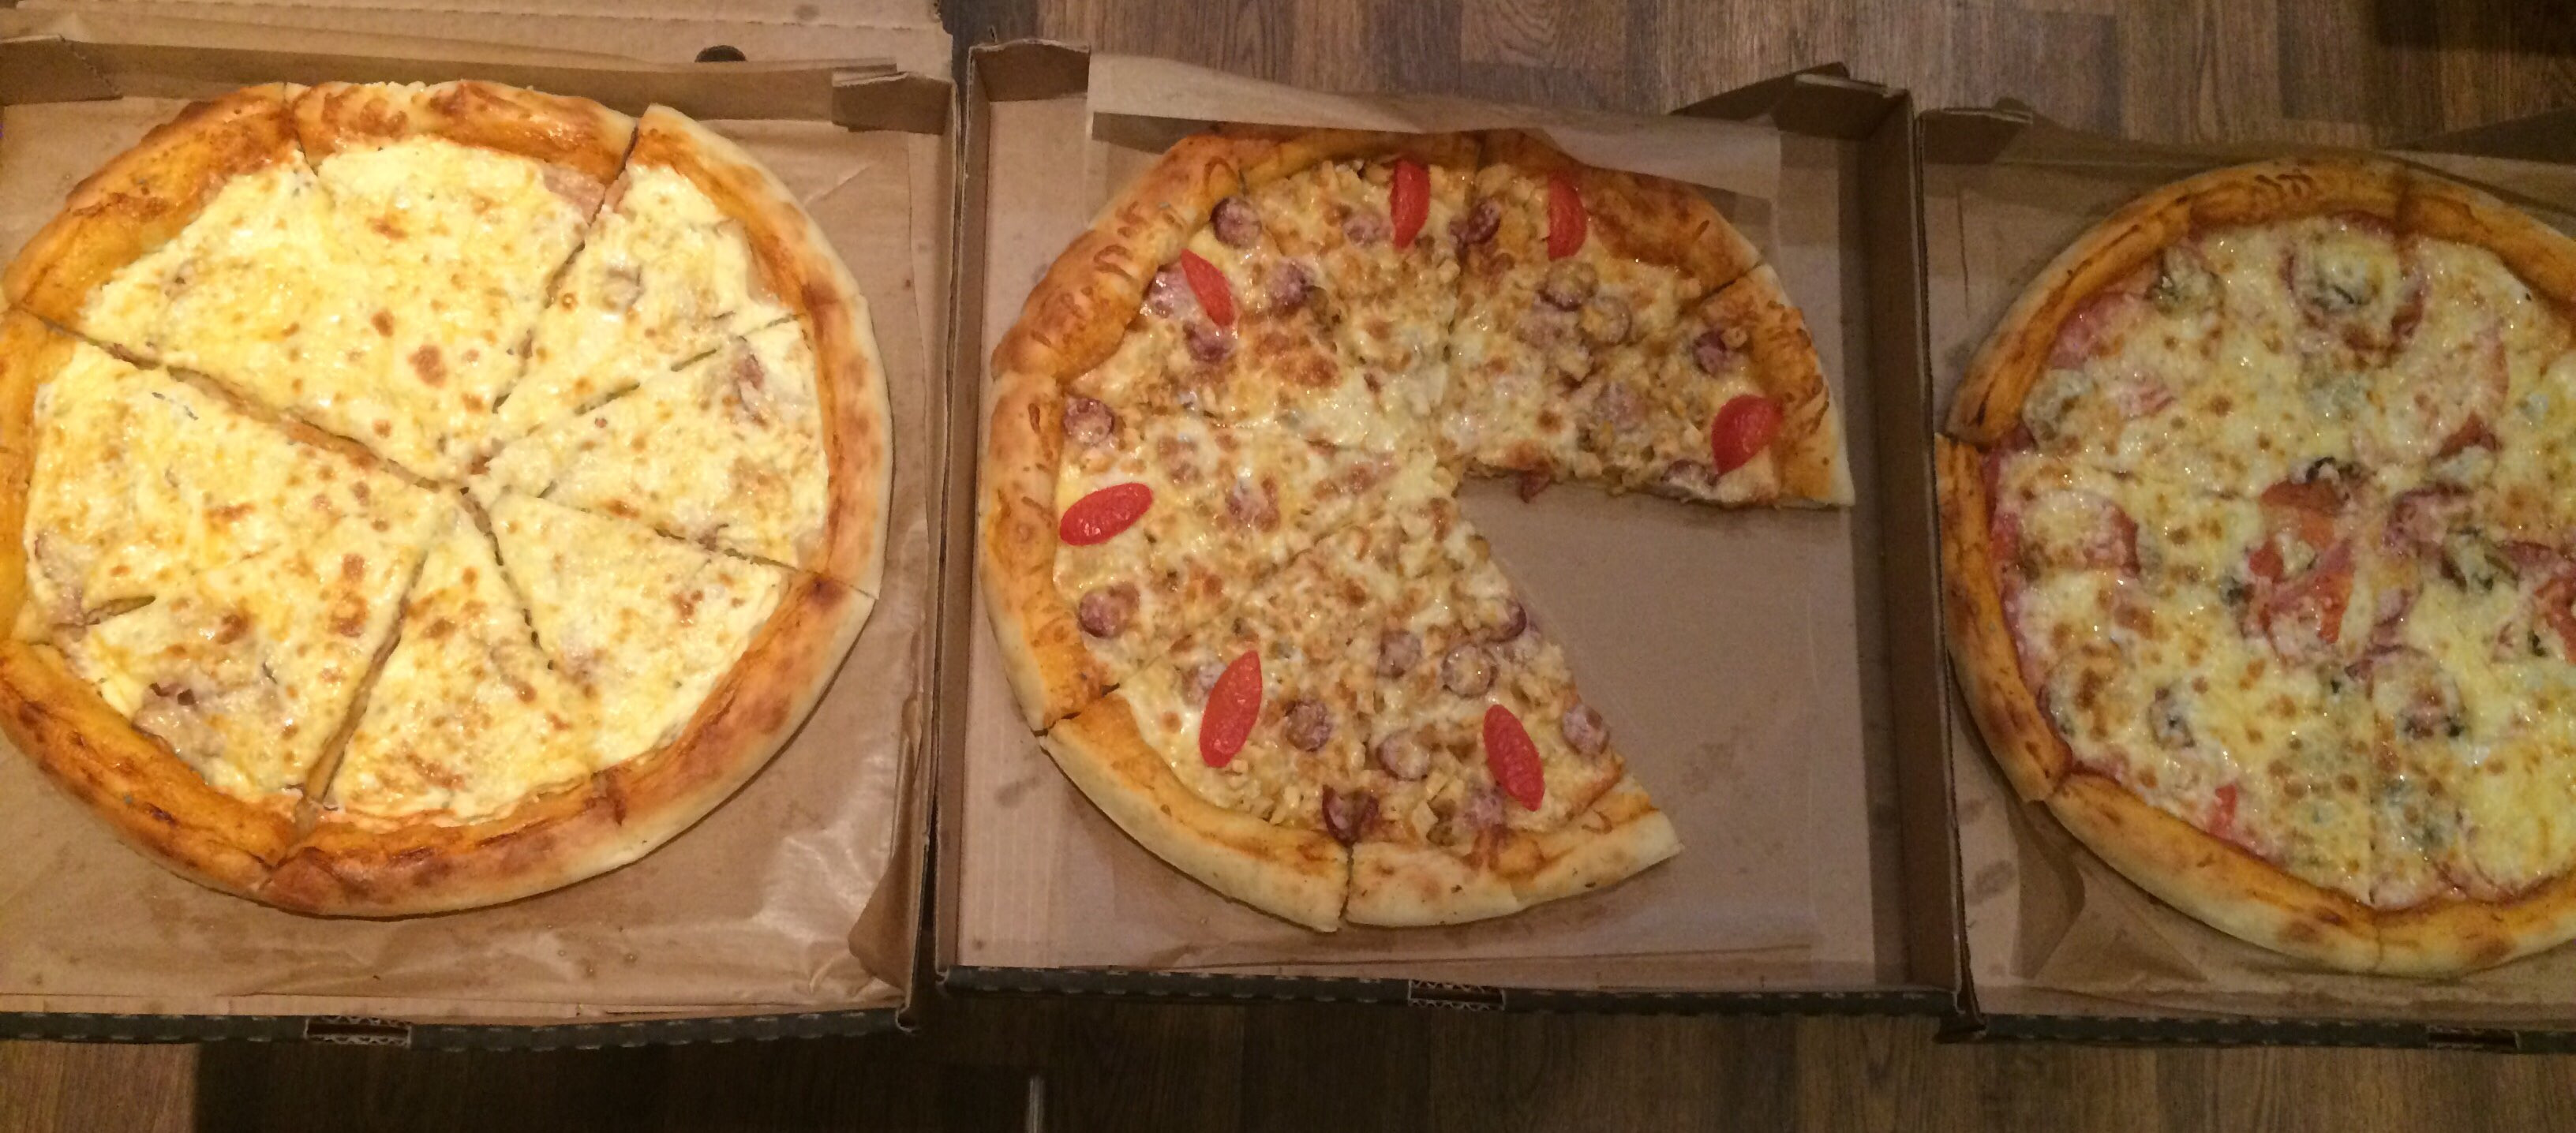 ниндзя пицца в красноярске режим работы фото 103